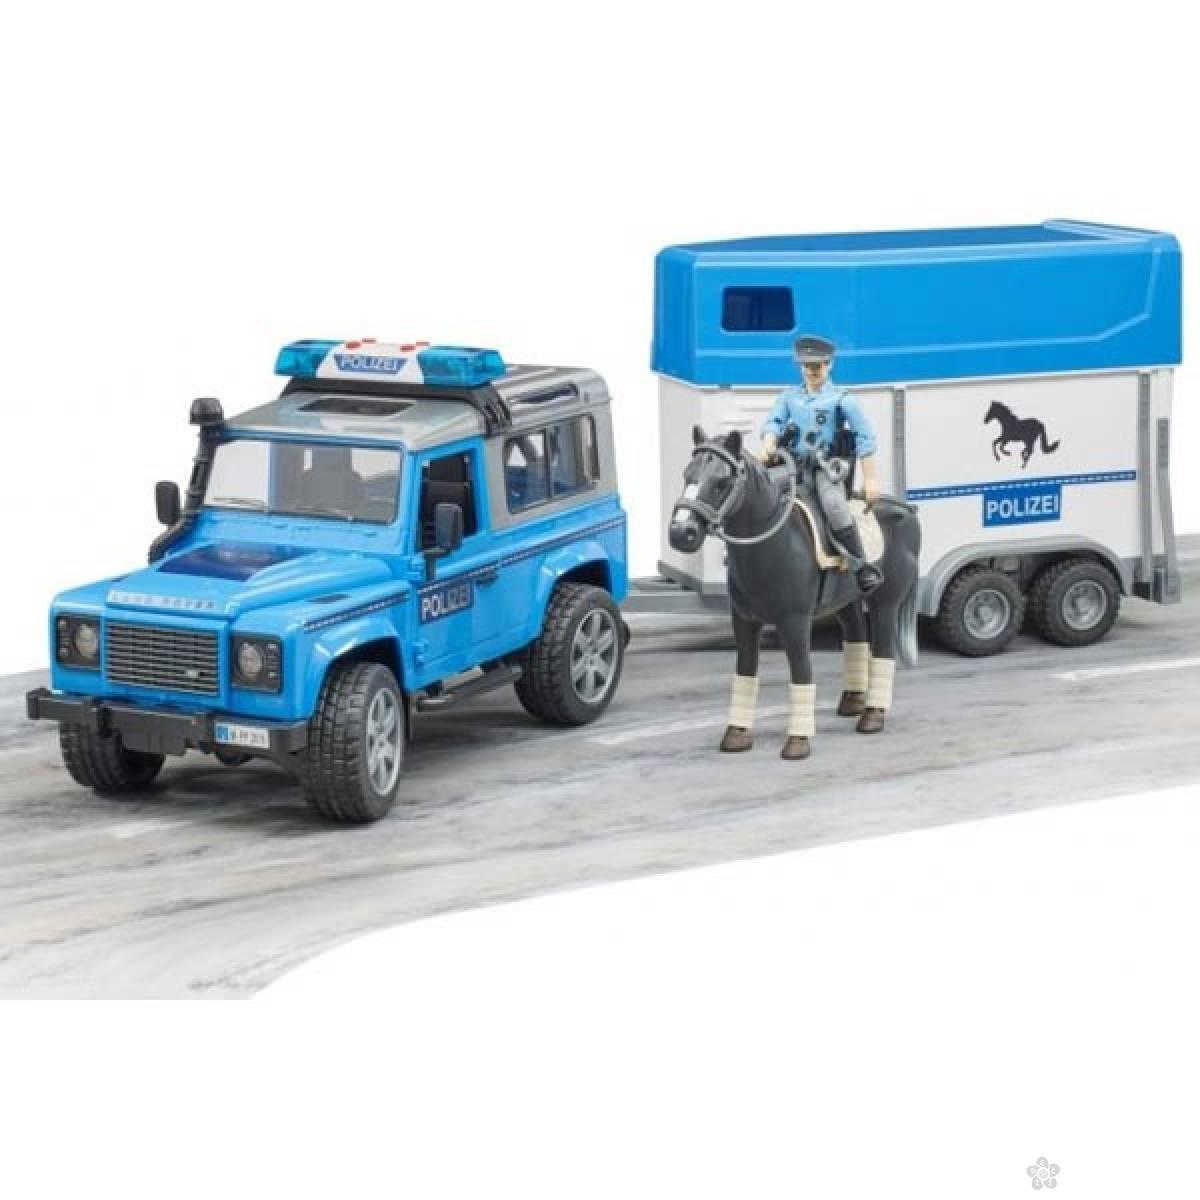 Džip Land Rover policijski, sa prikolicom i konjem 025885 